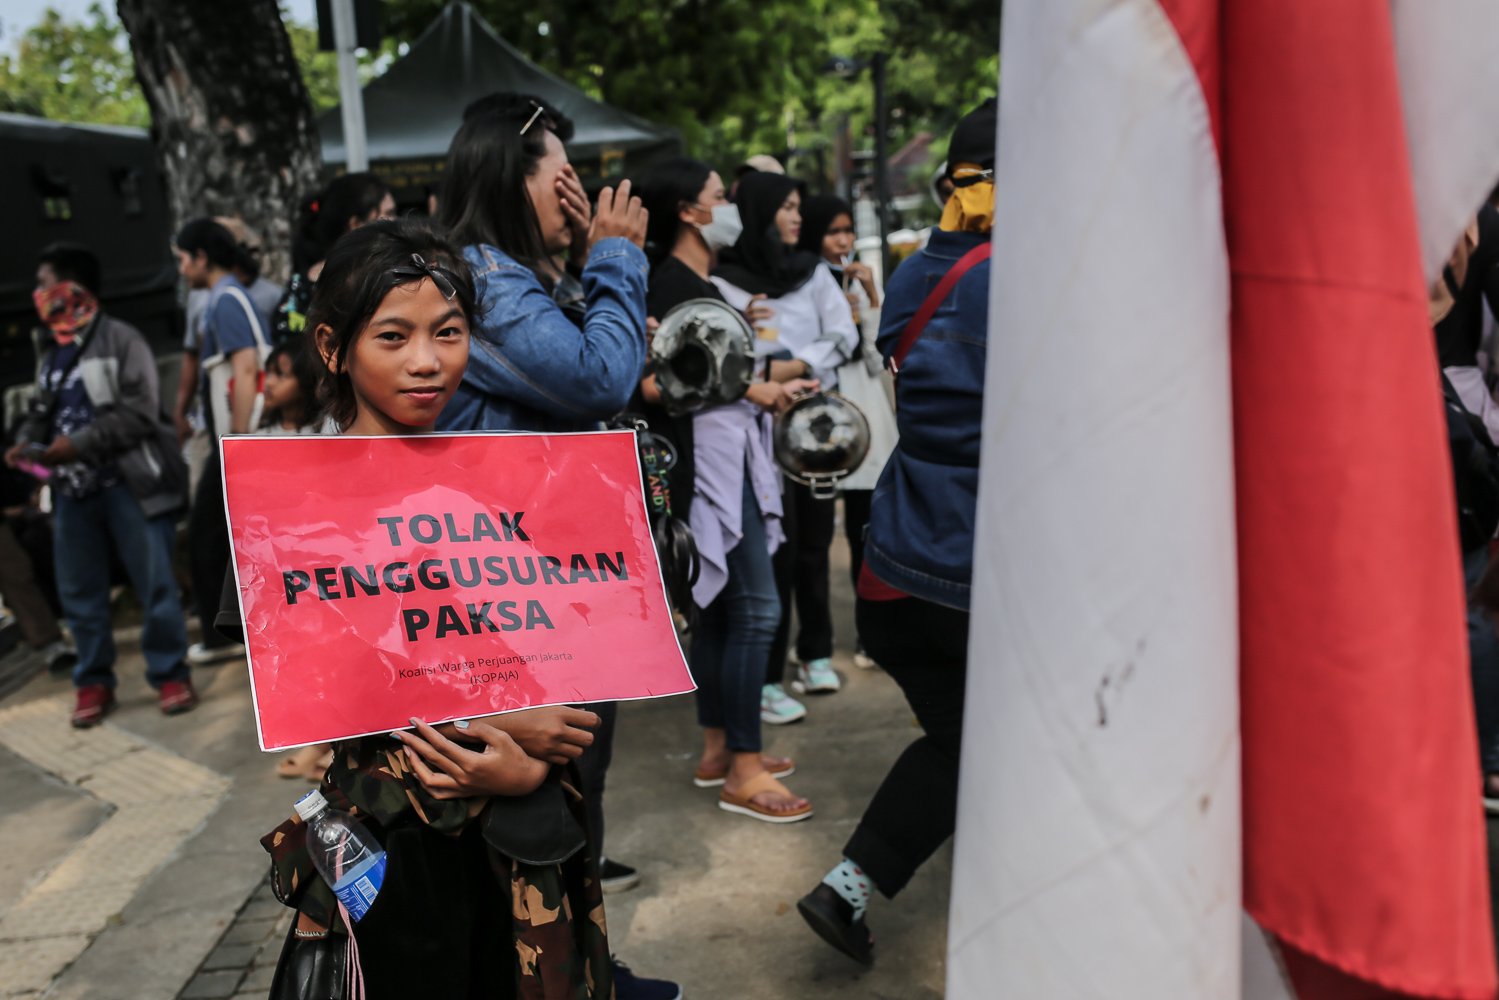 Sejumlah warga yang tergabung dalam koalisi perjuangan warga Jakarta (KOPAJA) melakukan aksi unjuk rasa di depan gedung Balai Kota Jakarta, Jumat (16/10). Dalam aksi tersebut, warga memberikan rapor merah kepada Anies Baswedan karena dinilai belum menyelesaikan permaslahan selama menjabat sebagai Gubernur DKI Jakarta.